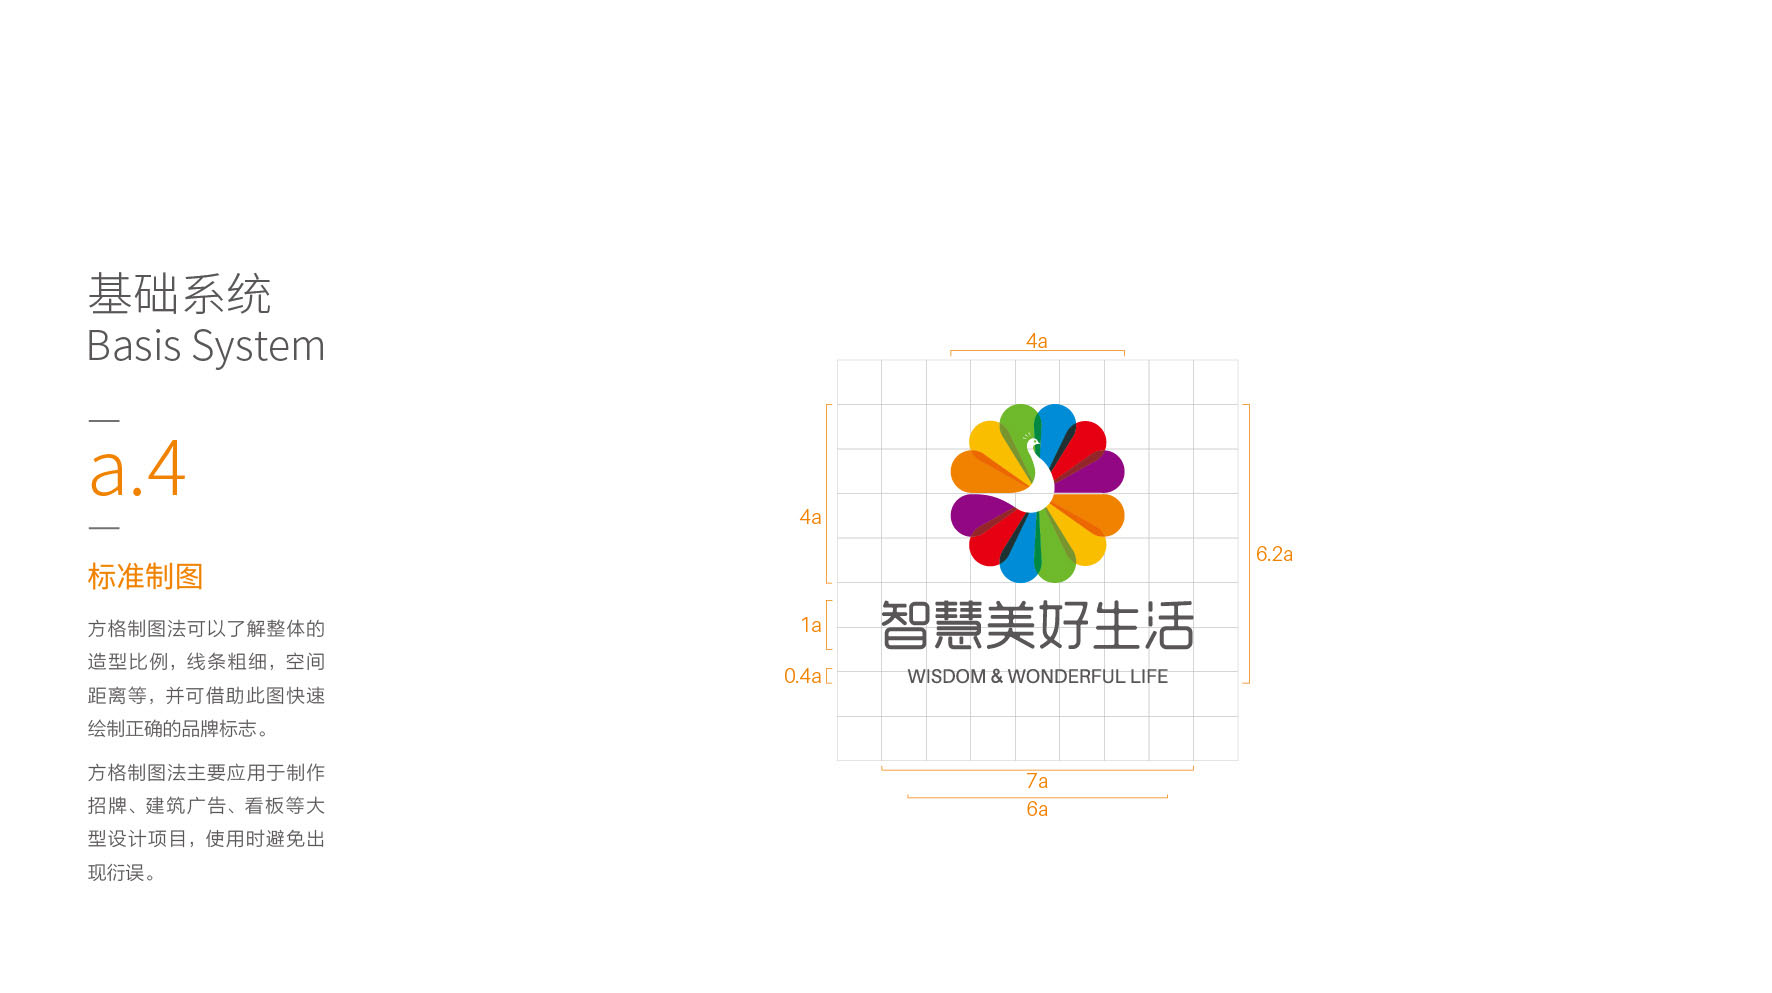 深圳养生logo设计-智慧美好生活标志设计13.jpg